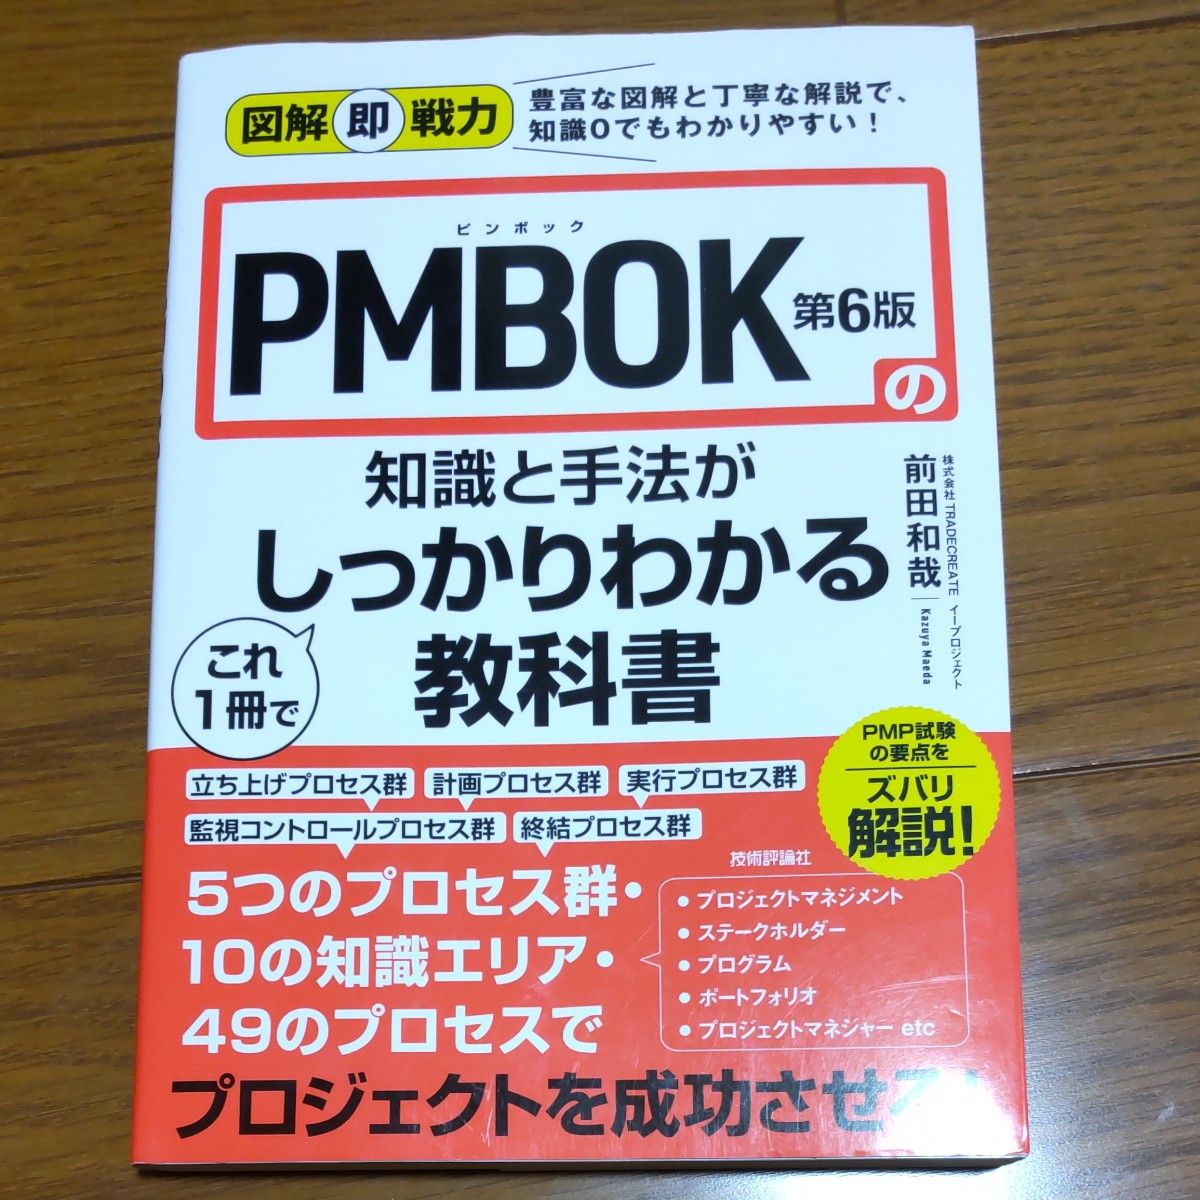 超激得SALE 図解即戦力 PMBOK第6版の知識と手法がこれ1冊でしっかりわかる教科書